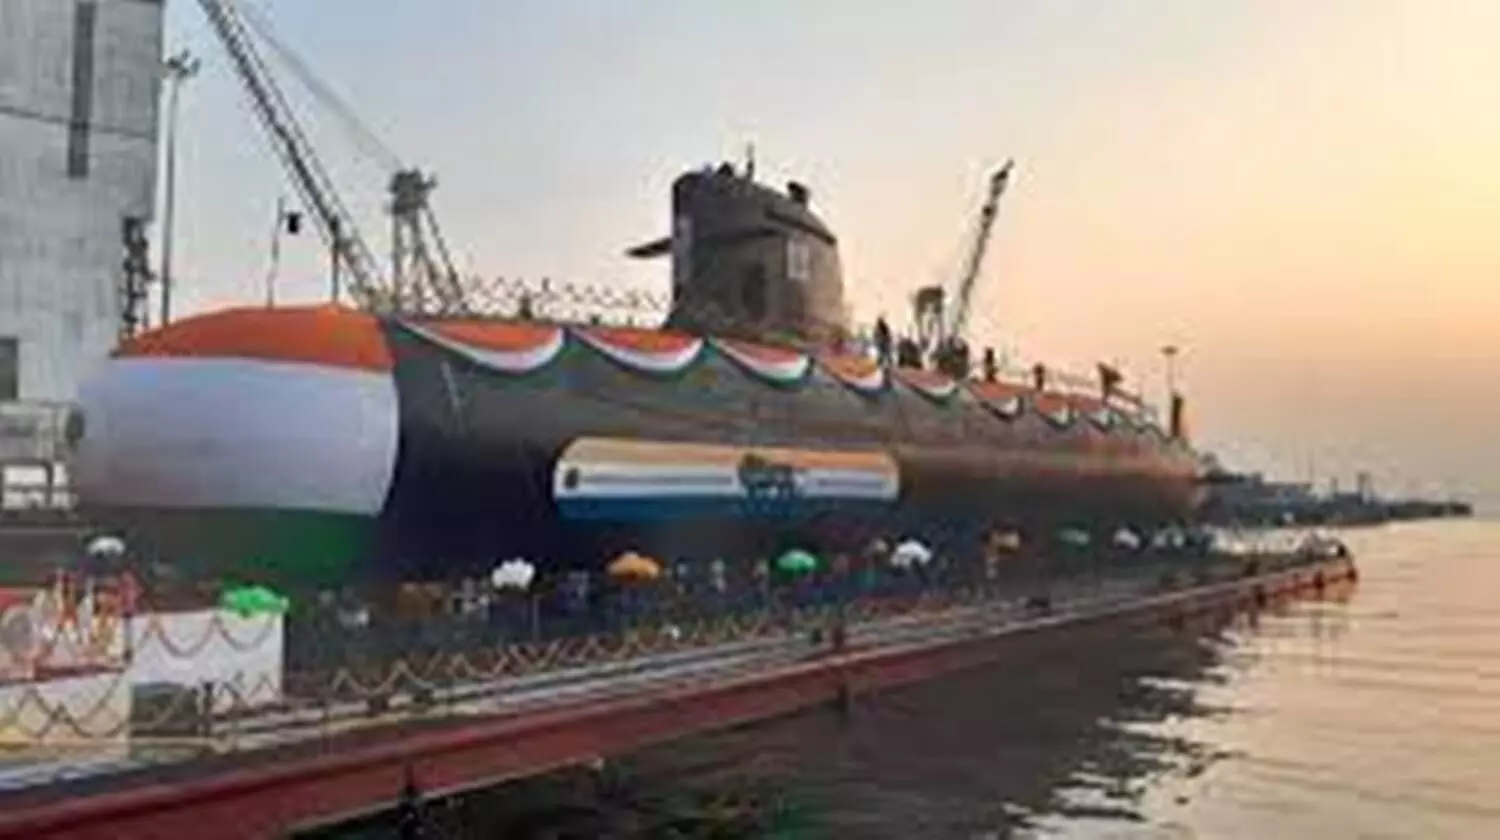 भारत देगा चीन-पाक को मुंहतोड़ जवाब, नौसेना के बेड़े में शामिल होंगी अत्याधुनिक पनडुब्बियां